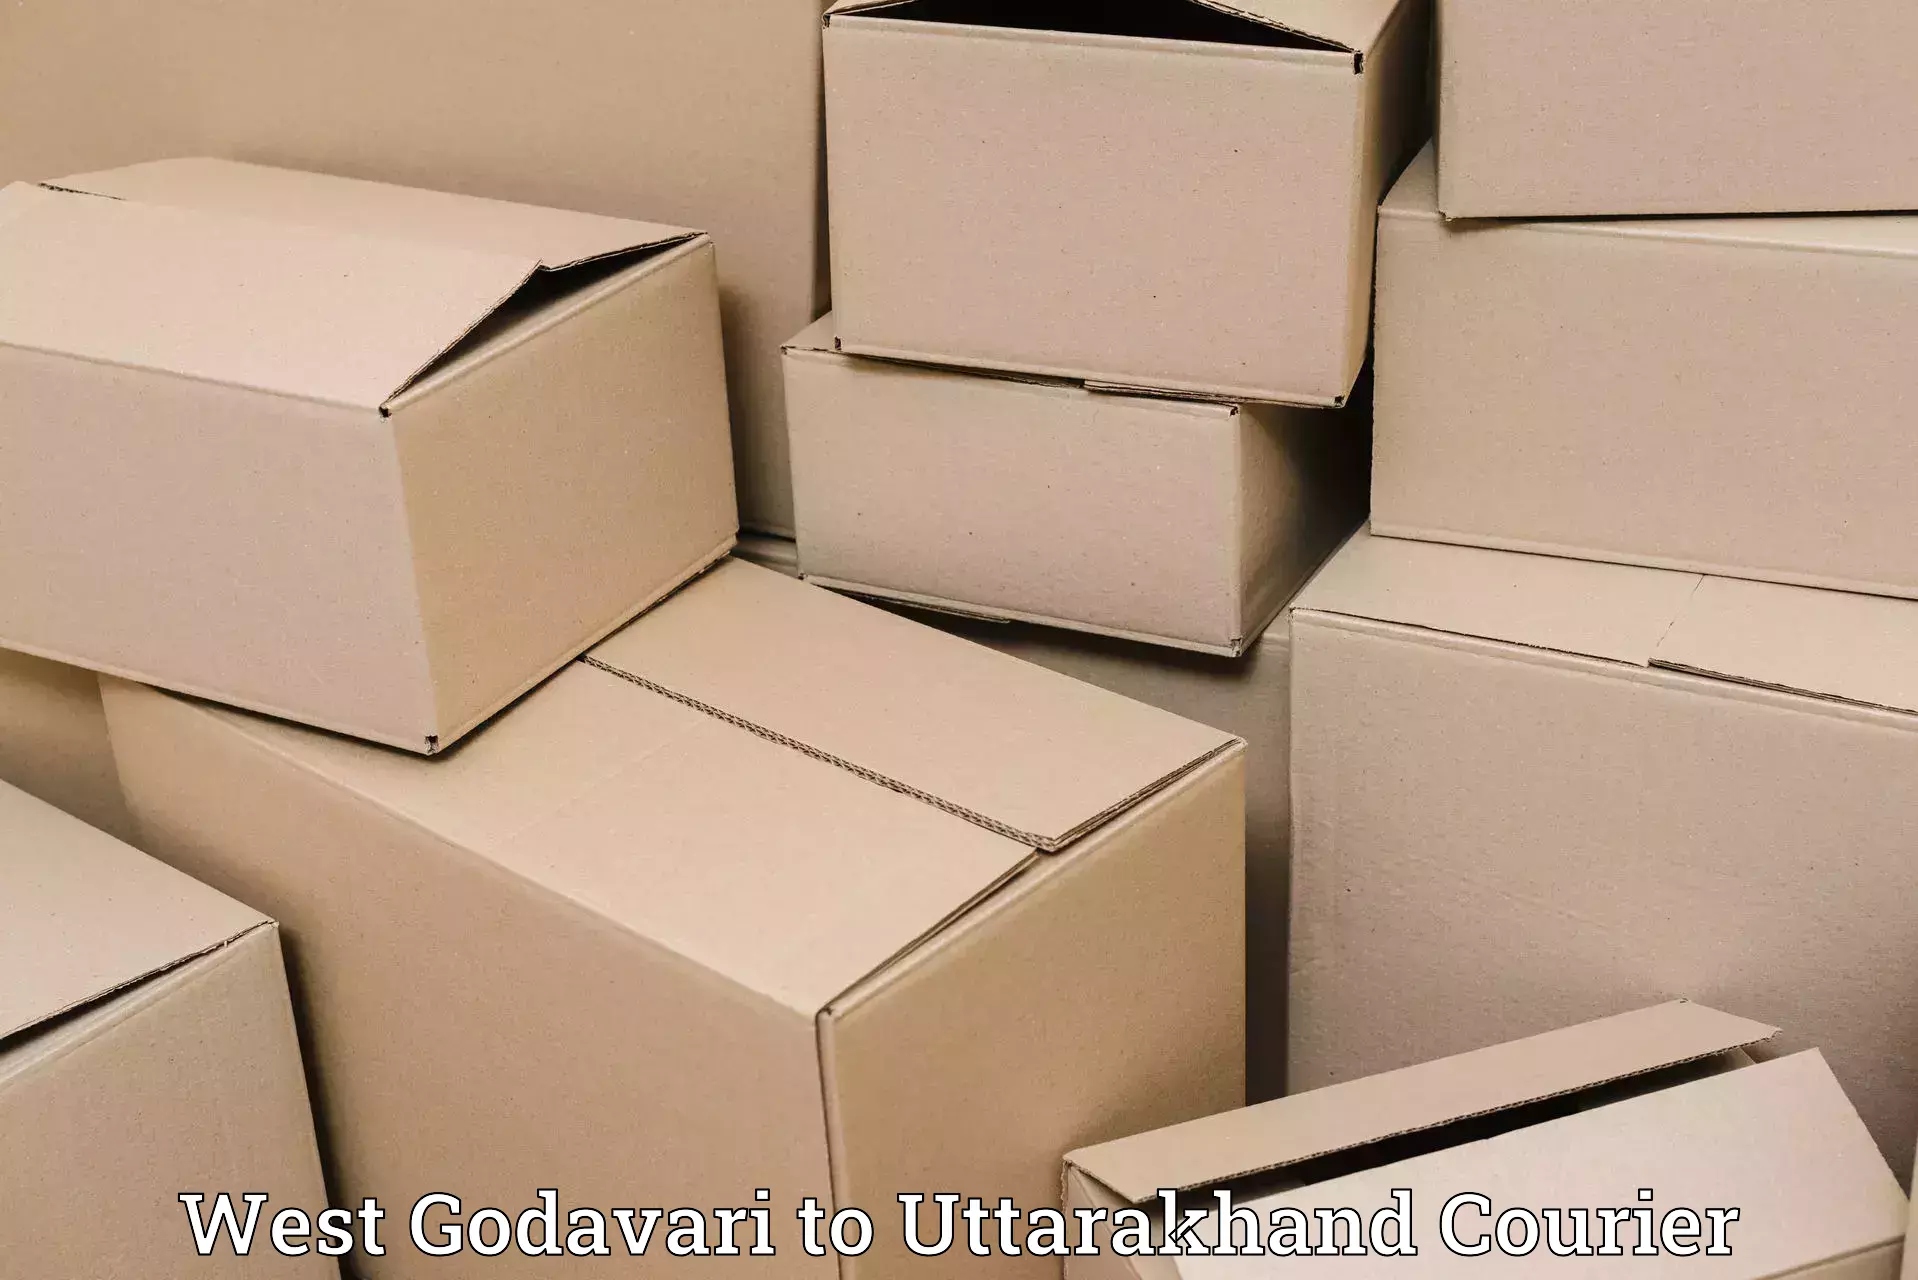 Luggage shipping specialists West Godavari to Uttarakhand